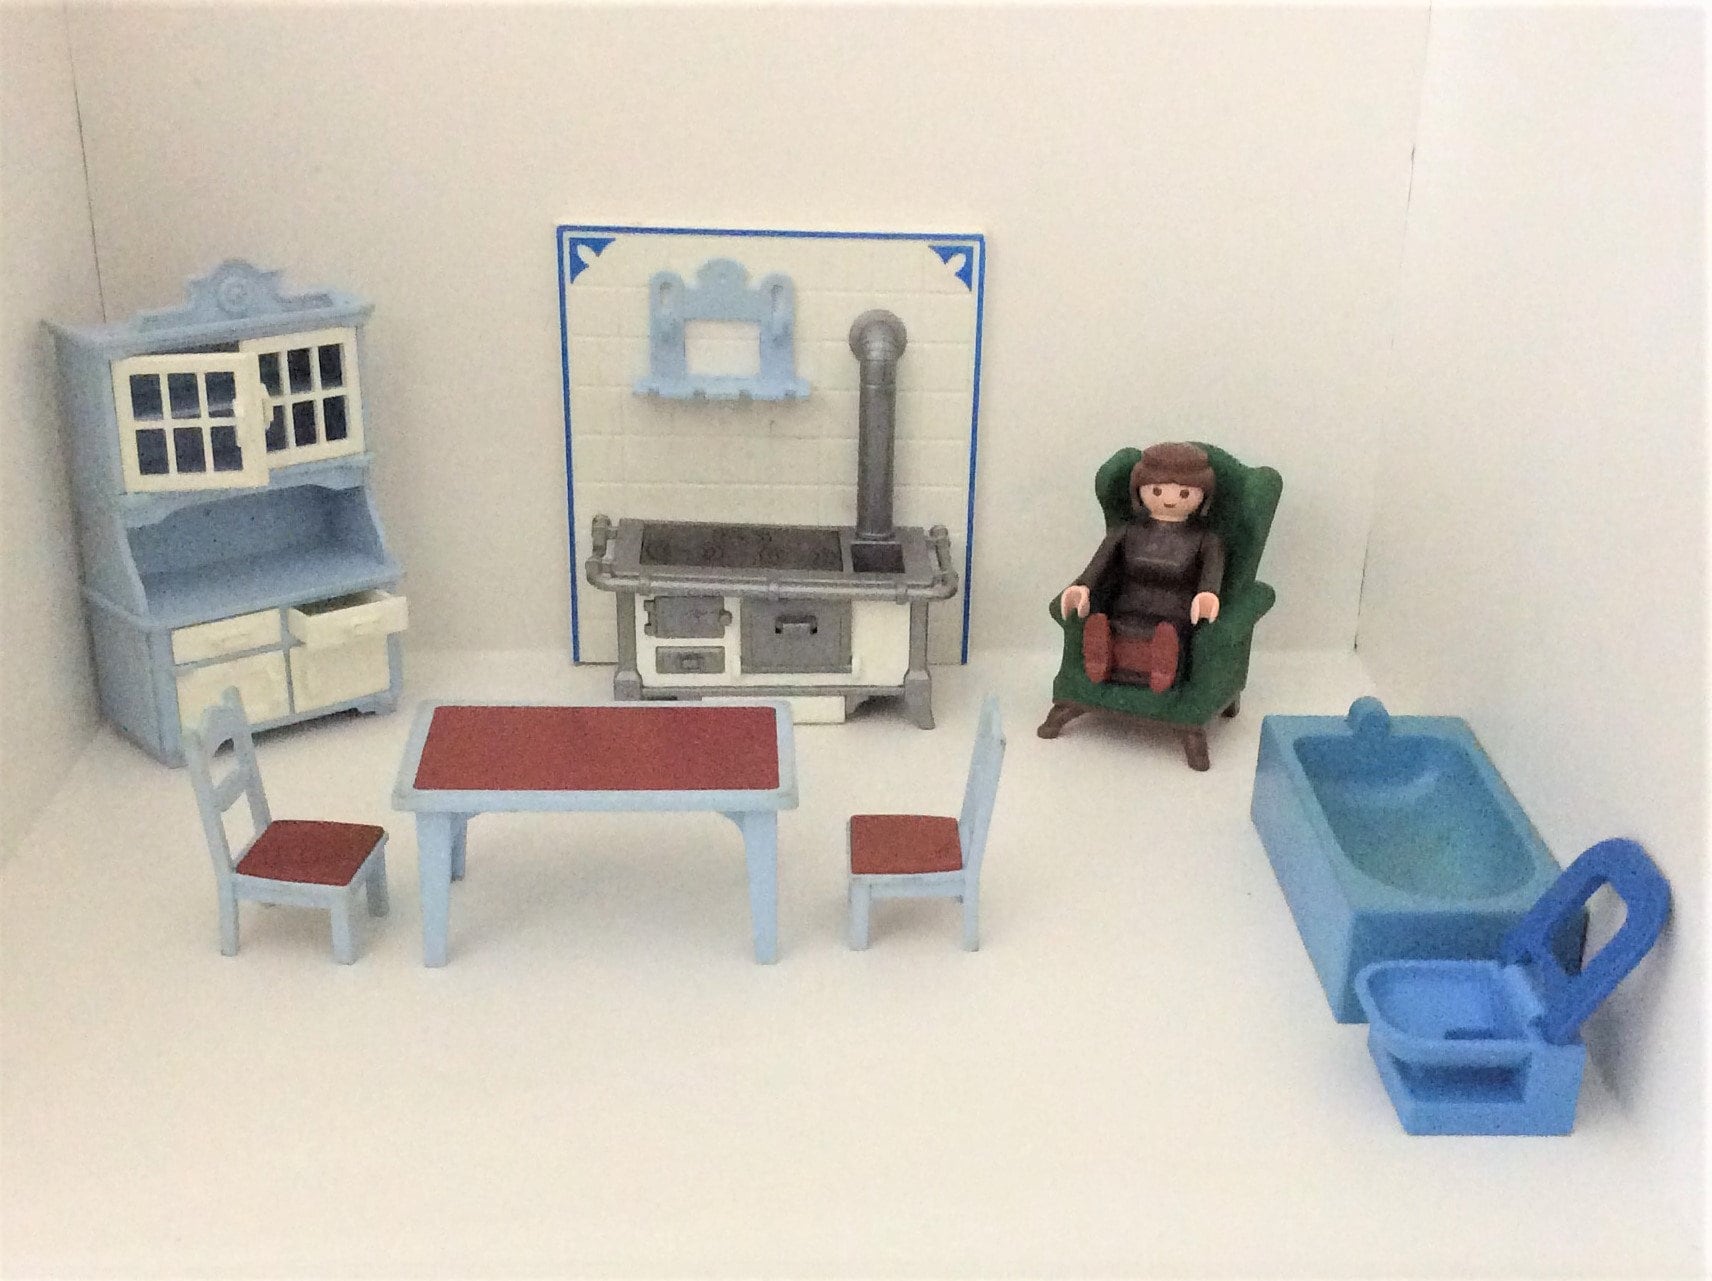 Playmobil cuisine meubles et ustensiles avec boîte de rangement - Playmobil